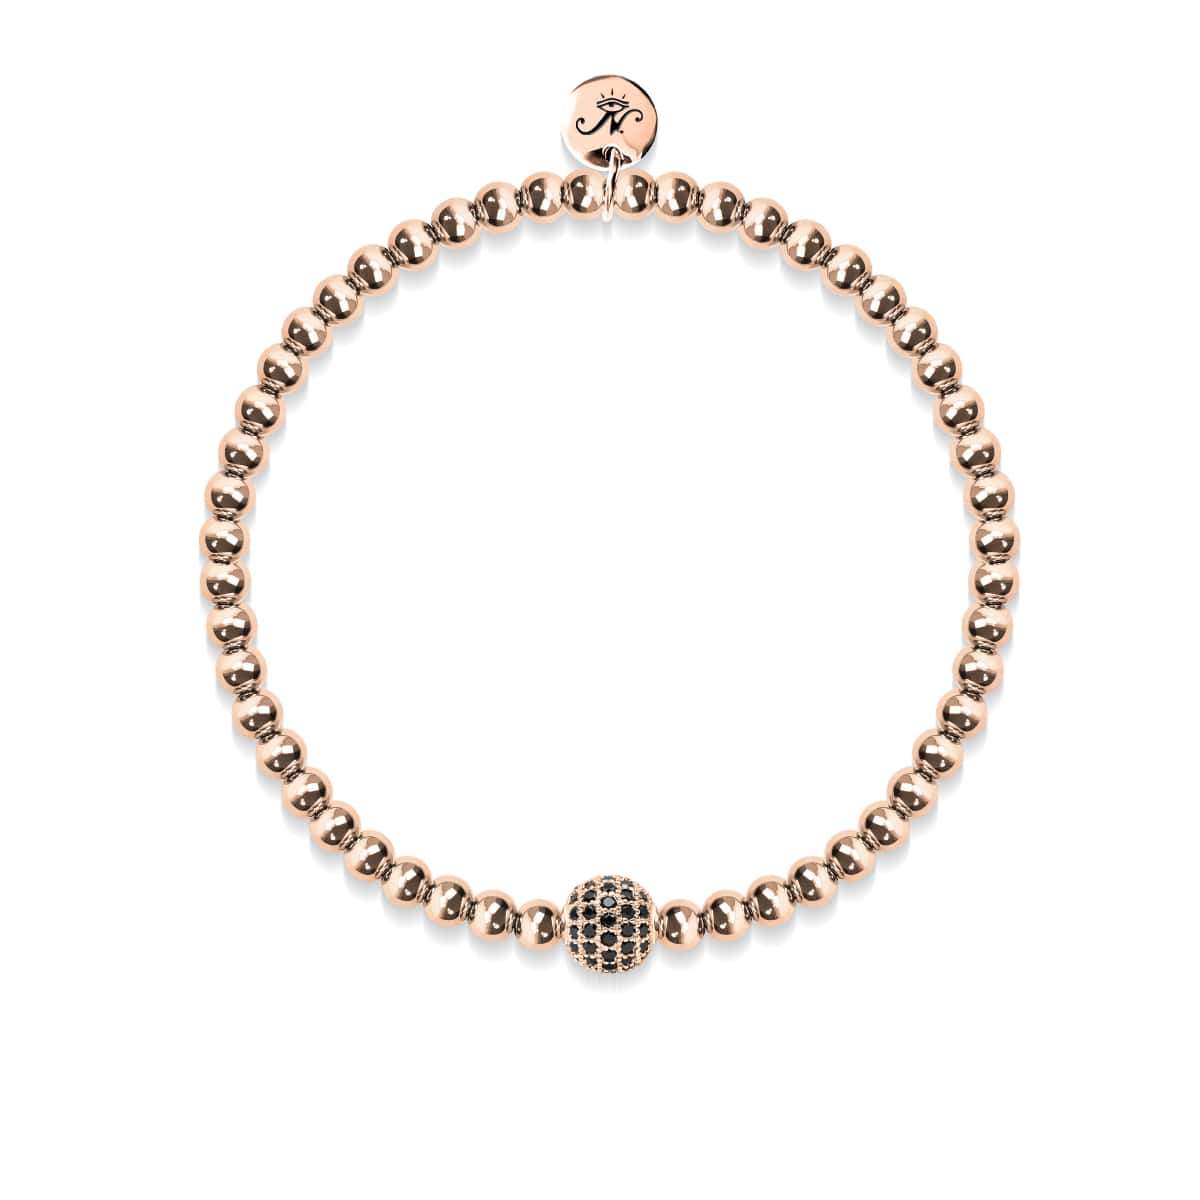 Copper Bracelets | What Are the Benefits of Wearing Copper Bracelets taamba  pahanane ke fayede , तांबे के ब्रेसलेट पहनने से ही हो जाती हैं कई बीमारियां  दूर, जानें इसके फायदे |